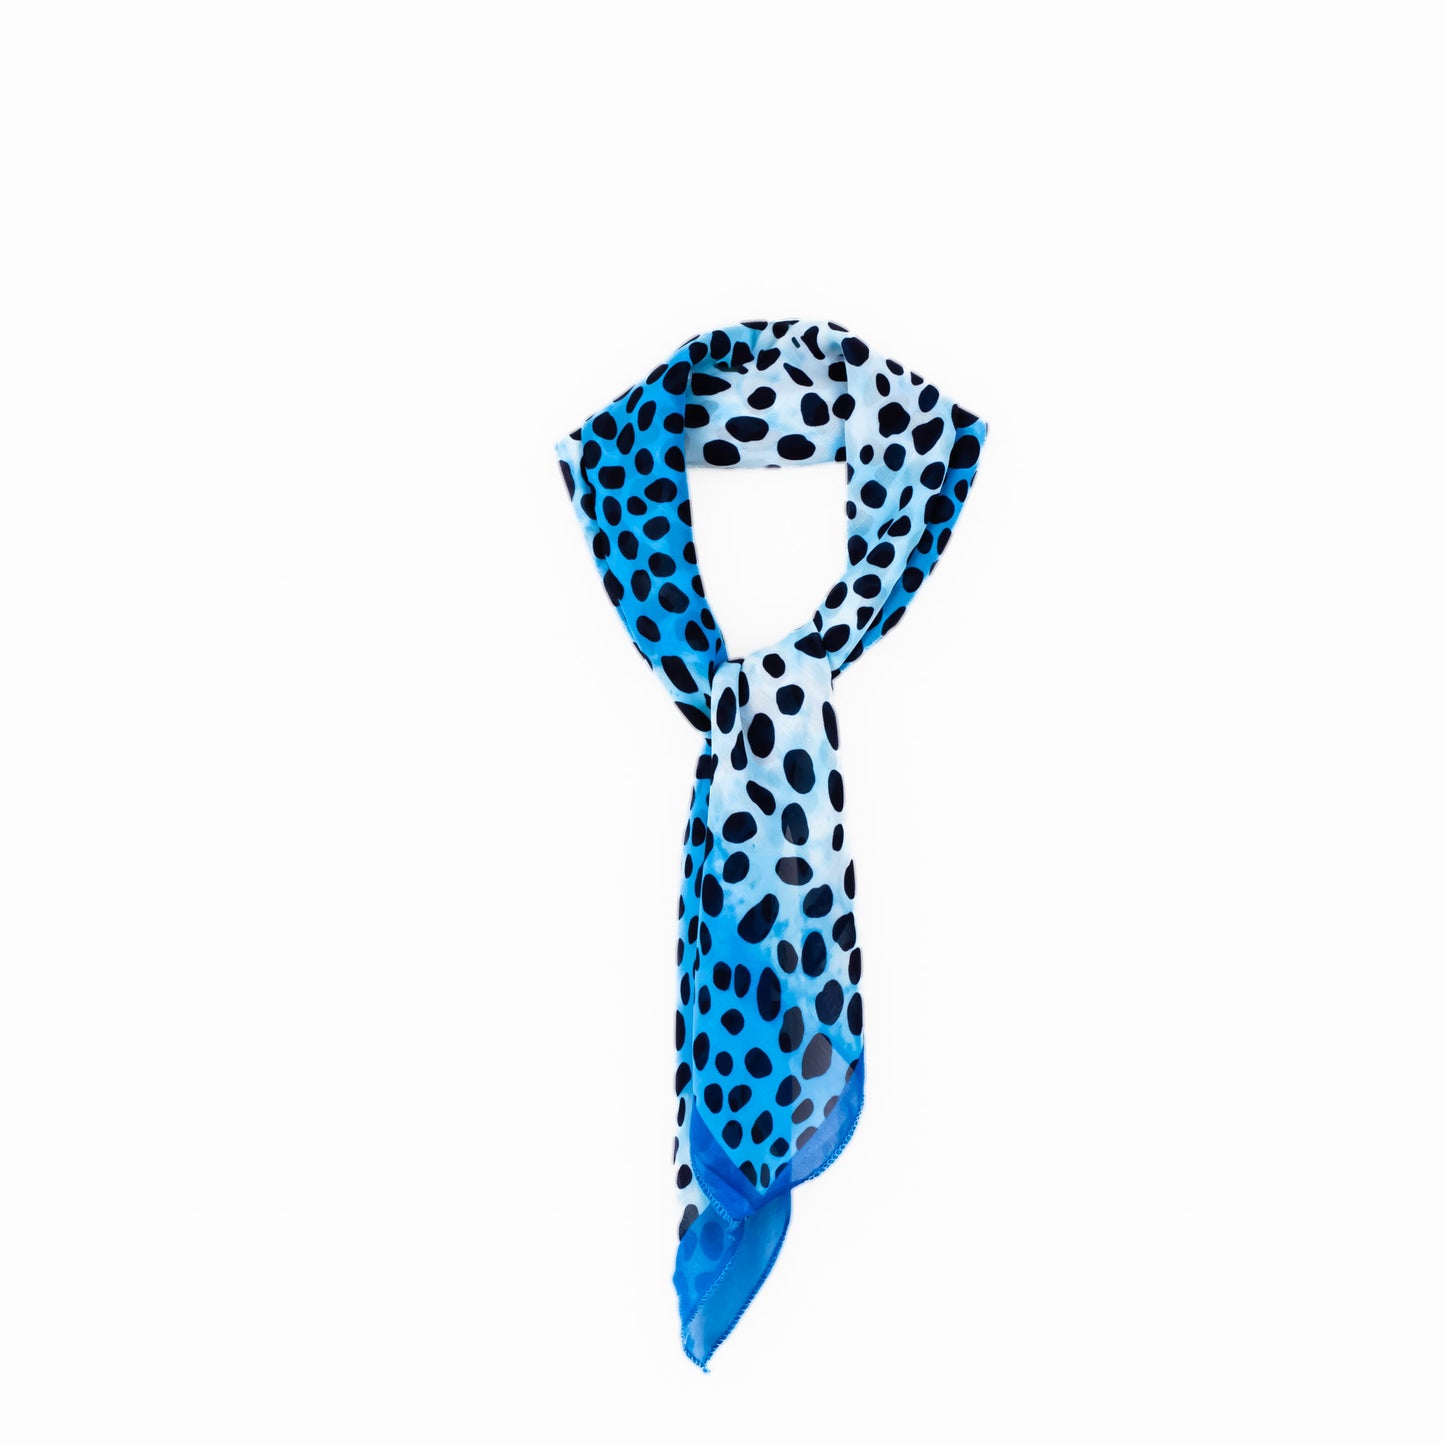 Eșarfă damă din mătase cu animal print în degrade, 65 x 65 cm - Albastru